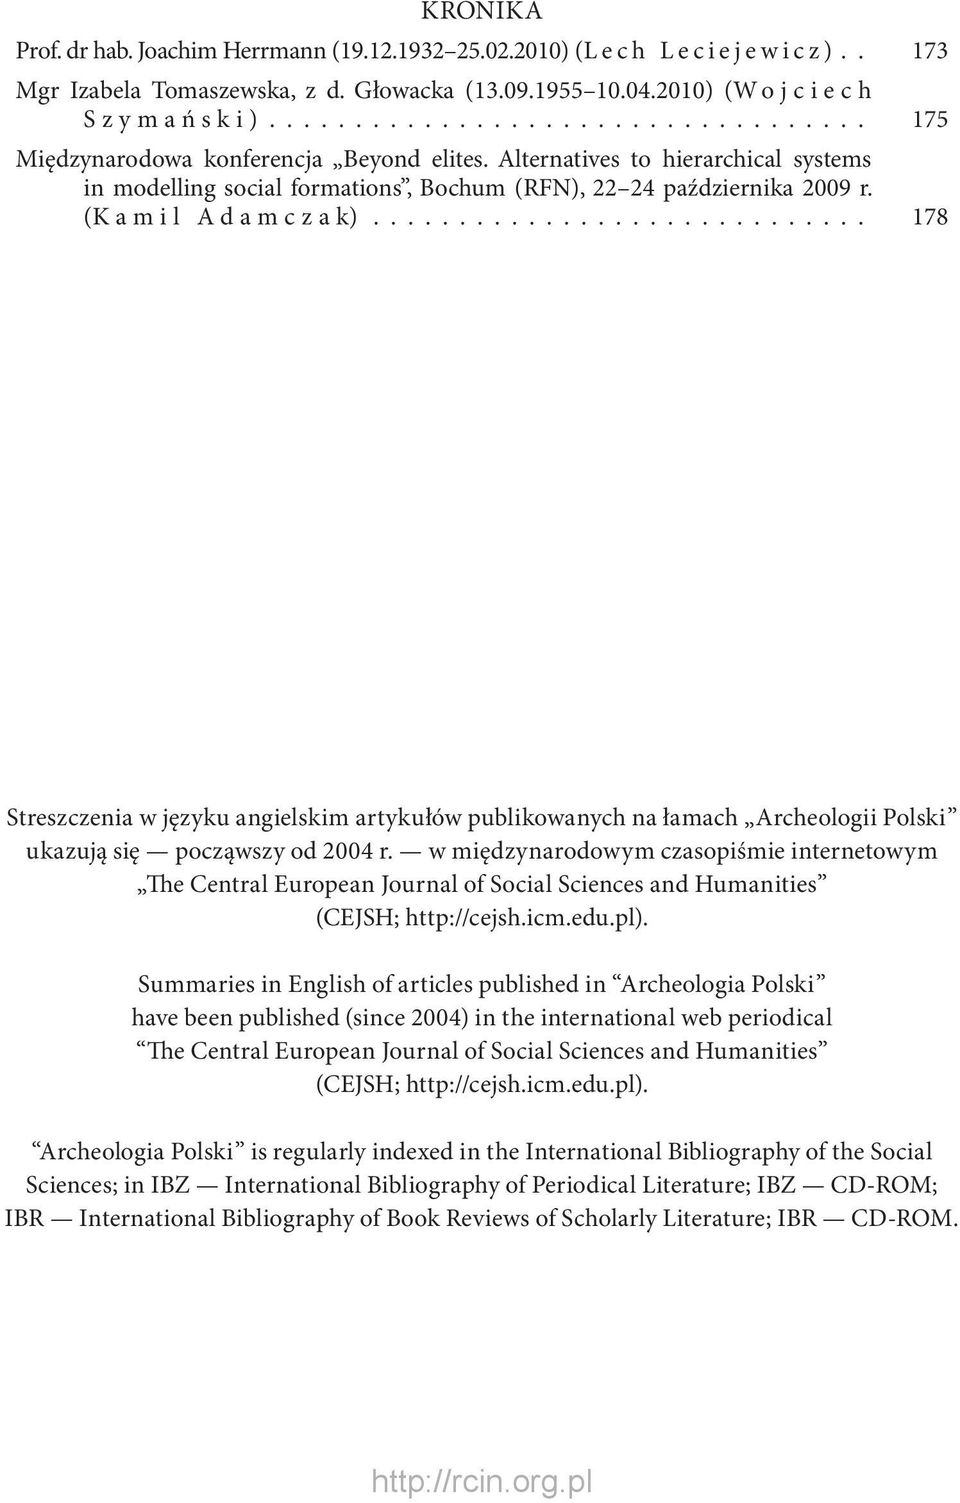 (Kamil Adamczak)............................. 178 Streszczenia w języku angielskim artykułów publikowanych na łamach Archeologii Polski ukazują się począwszy od 2004 r.